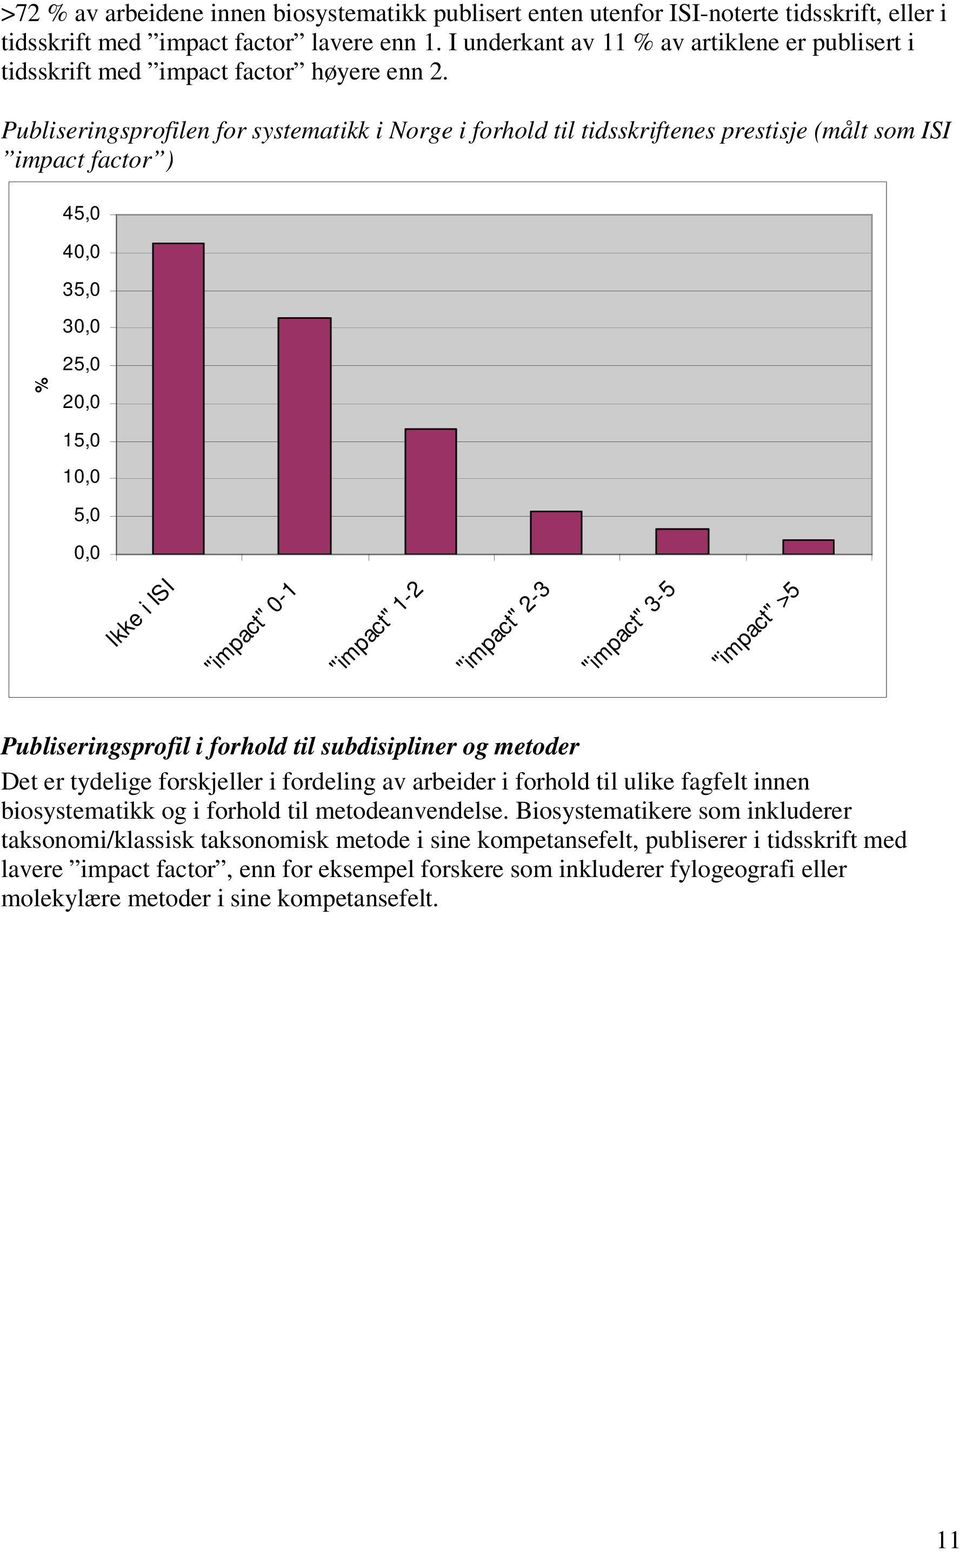 Publiseringsprofilen for systematikk i Norge i forhold til tidsskriftenes prestisje (målt som ISI impact factor ) % 45,0 40,0 35,0 30,0 25,0 20,0 15,0 10,0 5,0 0,0 Ikke i ISI "impact" 0-1 "impact"